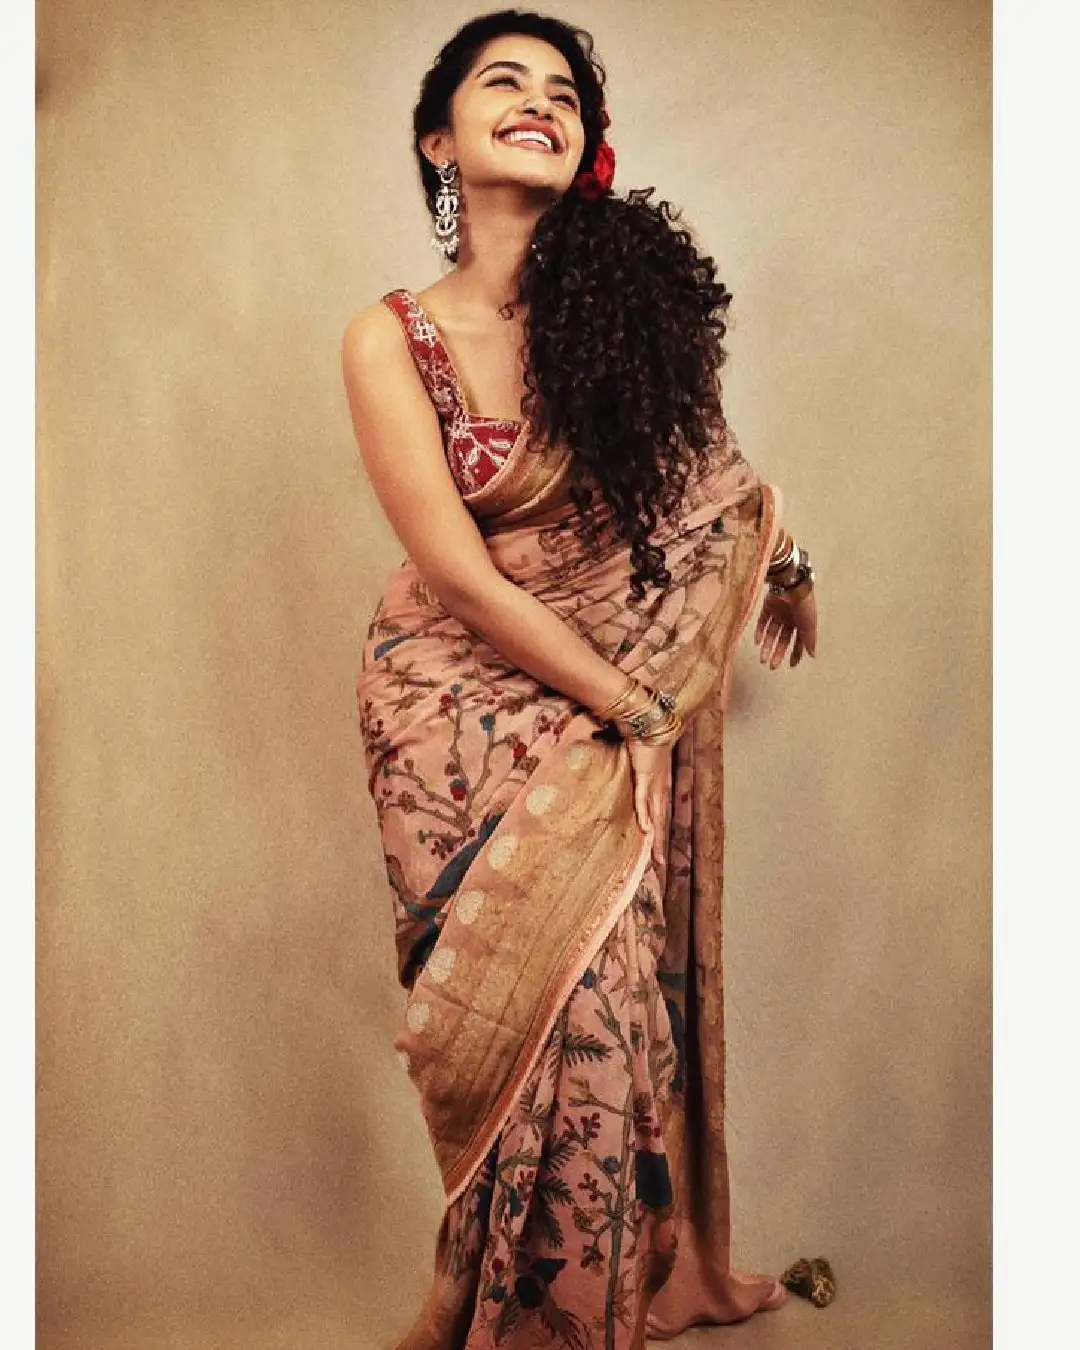 South actress Anupama Parameswaran Stuns In Retro Looks